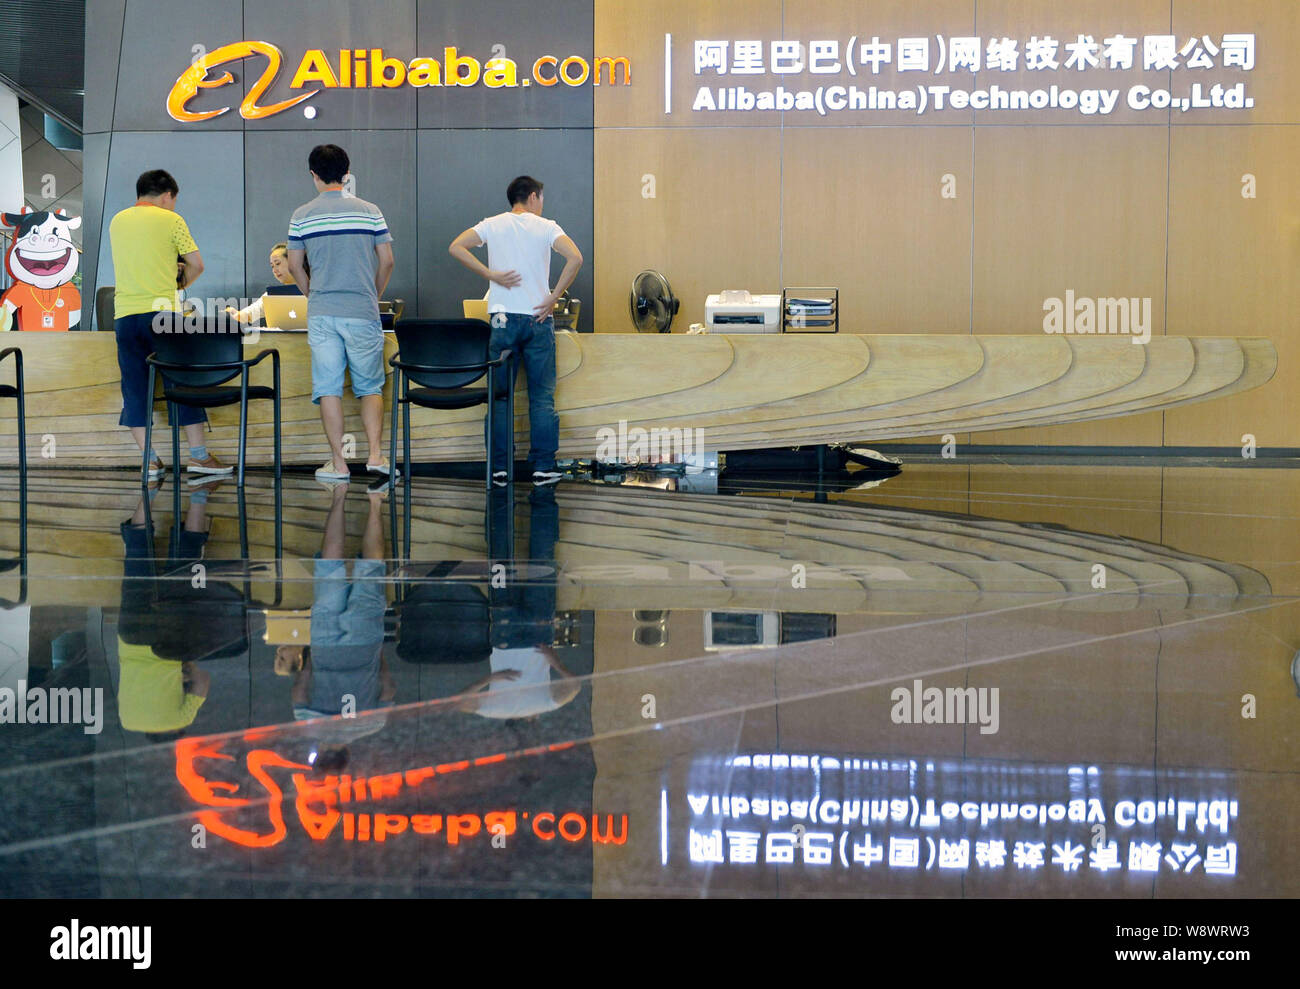 --FILE--visiteurs sont accueillis à la réception de l'administration centrale de l'e-commerce chinois Alibaba Group géant dans la ville de Hangzhou, Zhejiang Chine Moyen-Orient bauvin Banque D'Images